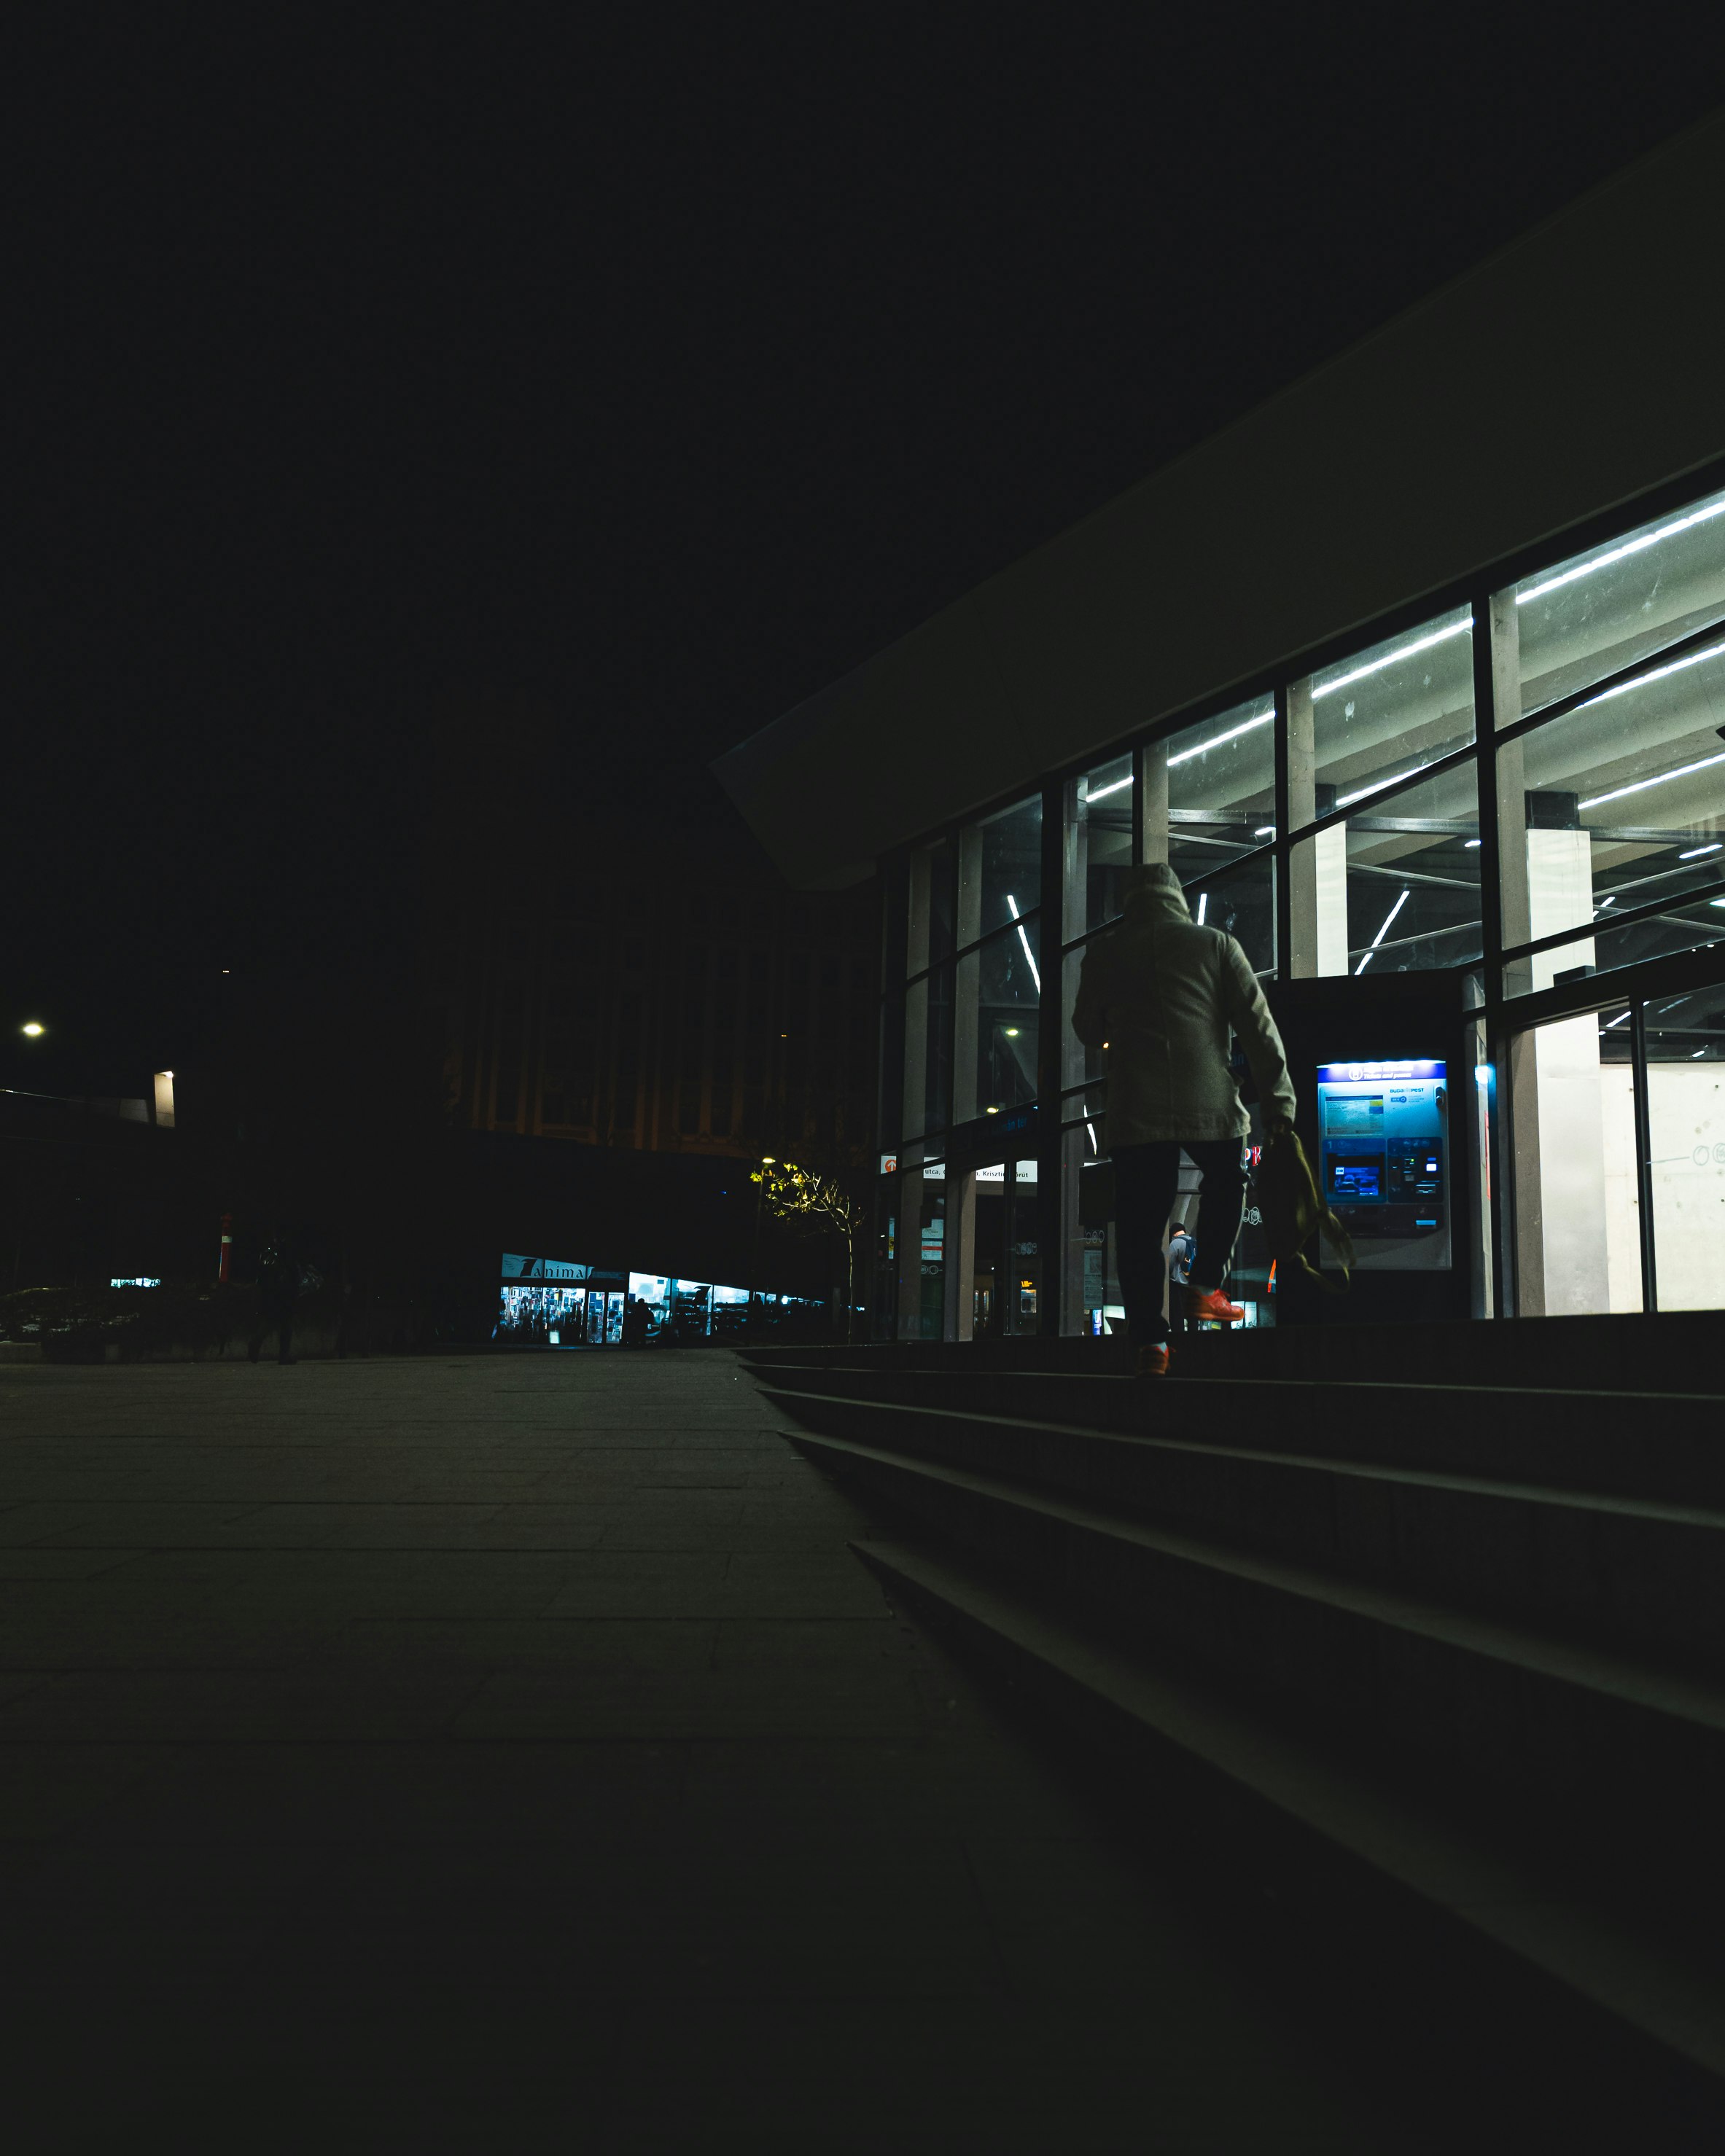 man in black jacket walking on sidewalk during night time